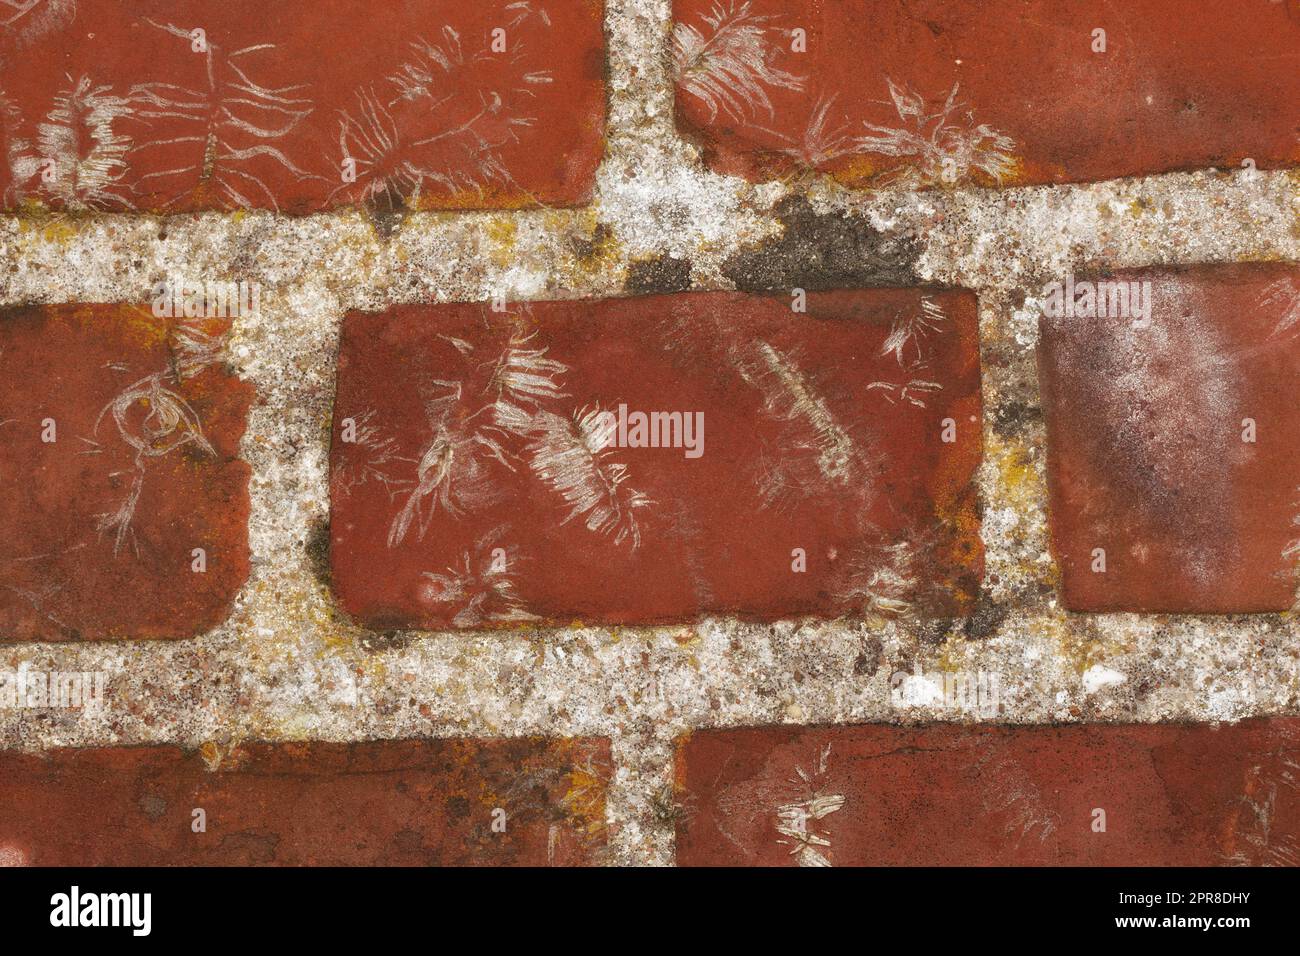 Gros plan d'un mur de briques rouges sur la surface extérieure rustique d'une maison, maison ou bâtiment de ville. Texture, détail de l'architecture brute conception de la face de brique sur une ancienne structure en décomposition Banque D'Images